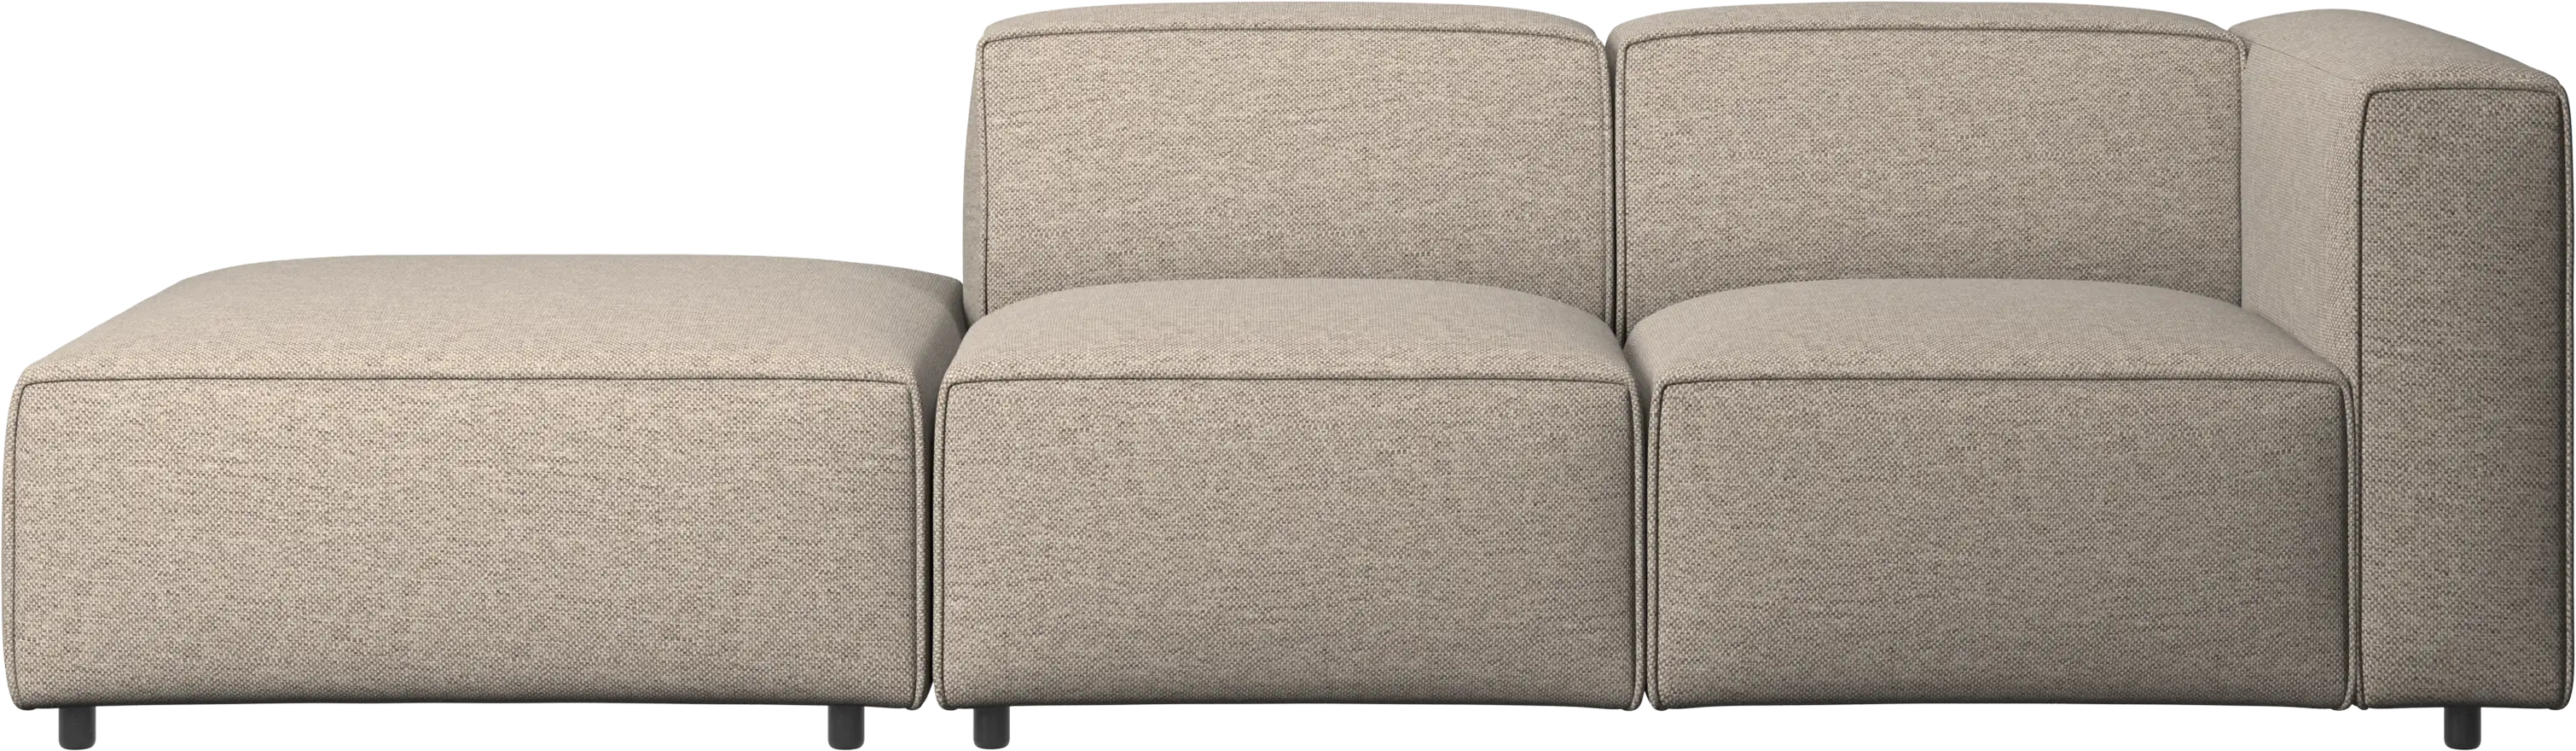 Carmo motion sofa